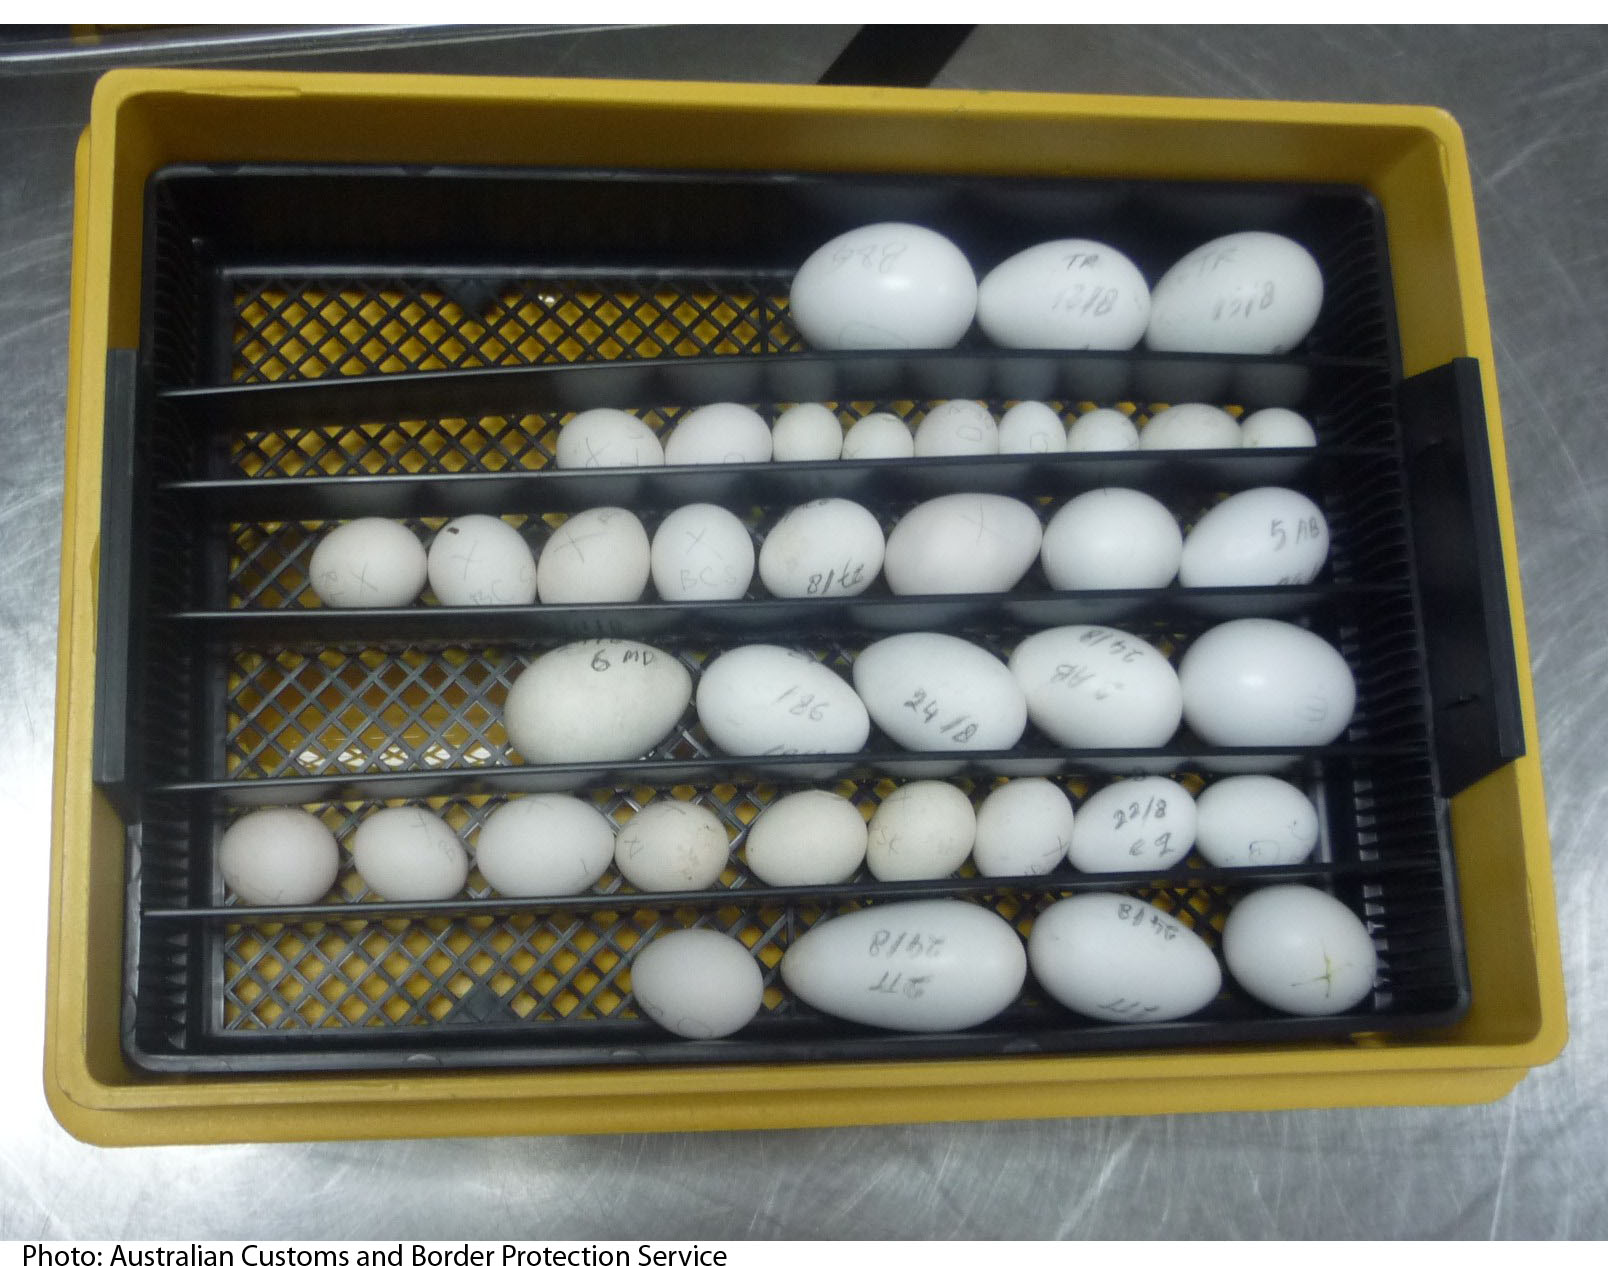 Deliberadamente Vandalir Lo encontré Recolección y conservación de huevos fértiles | Infoexóticos